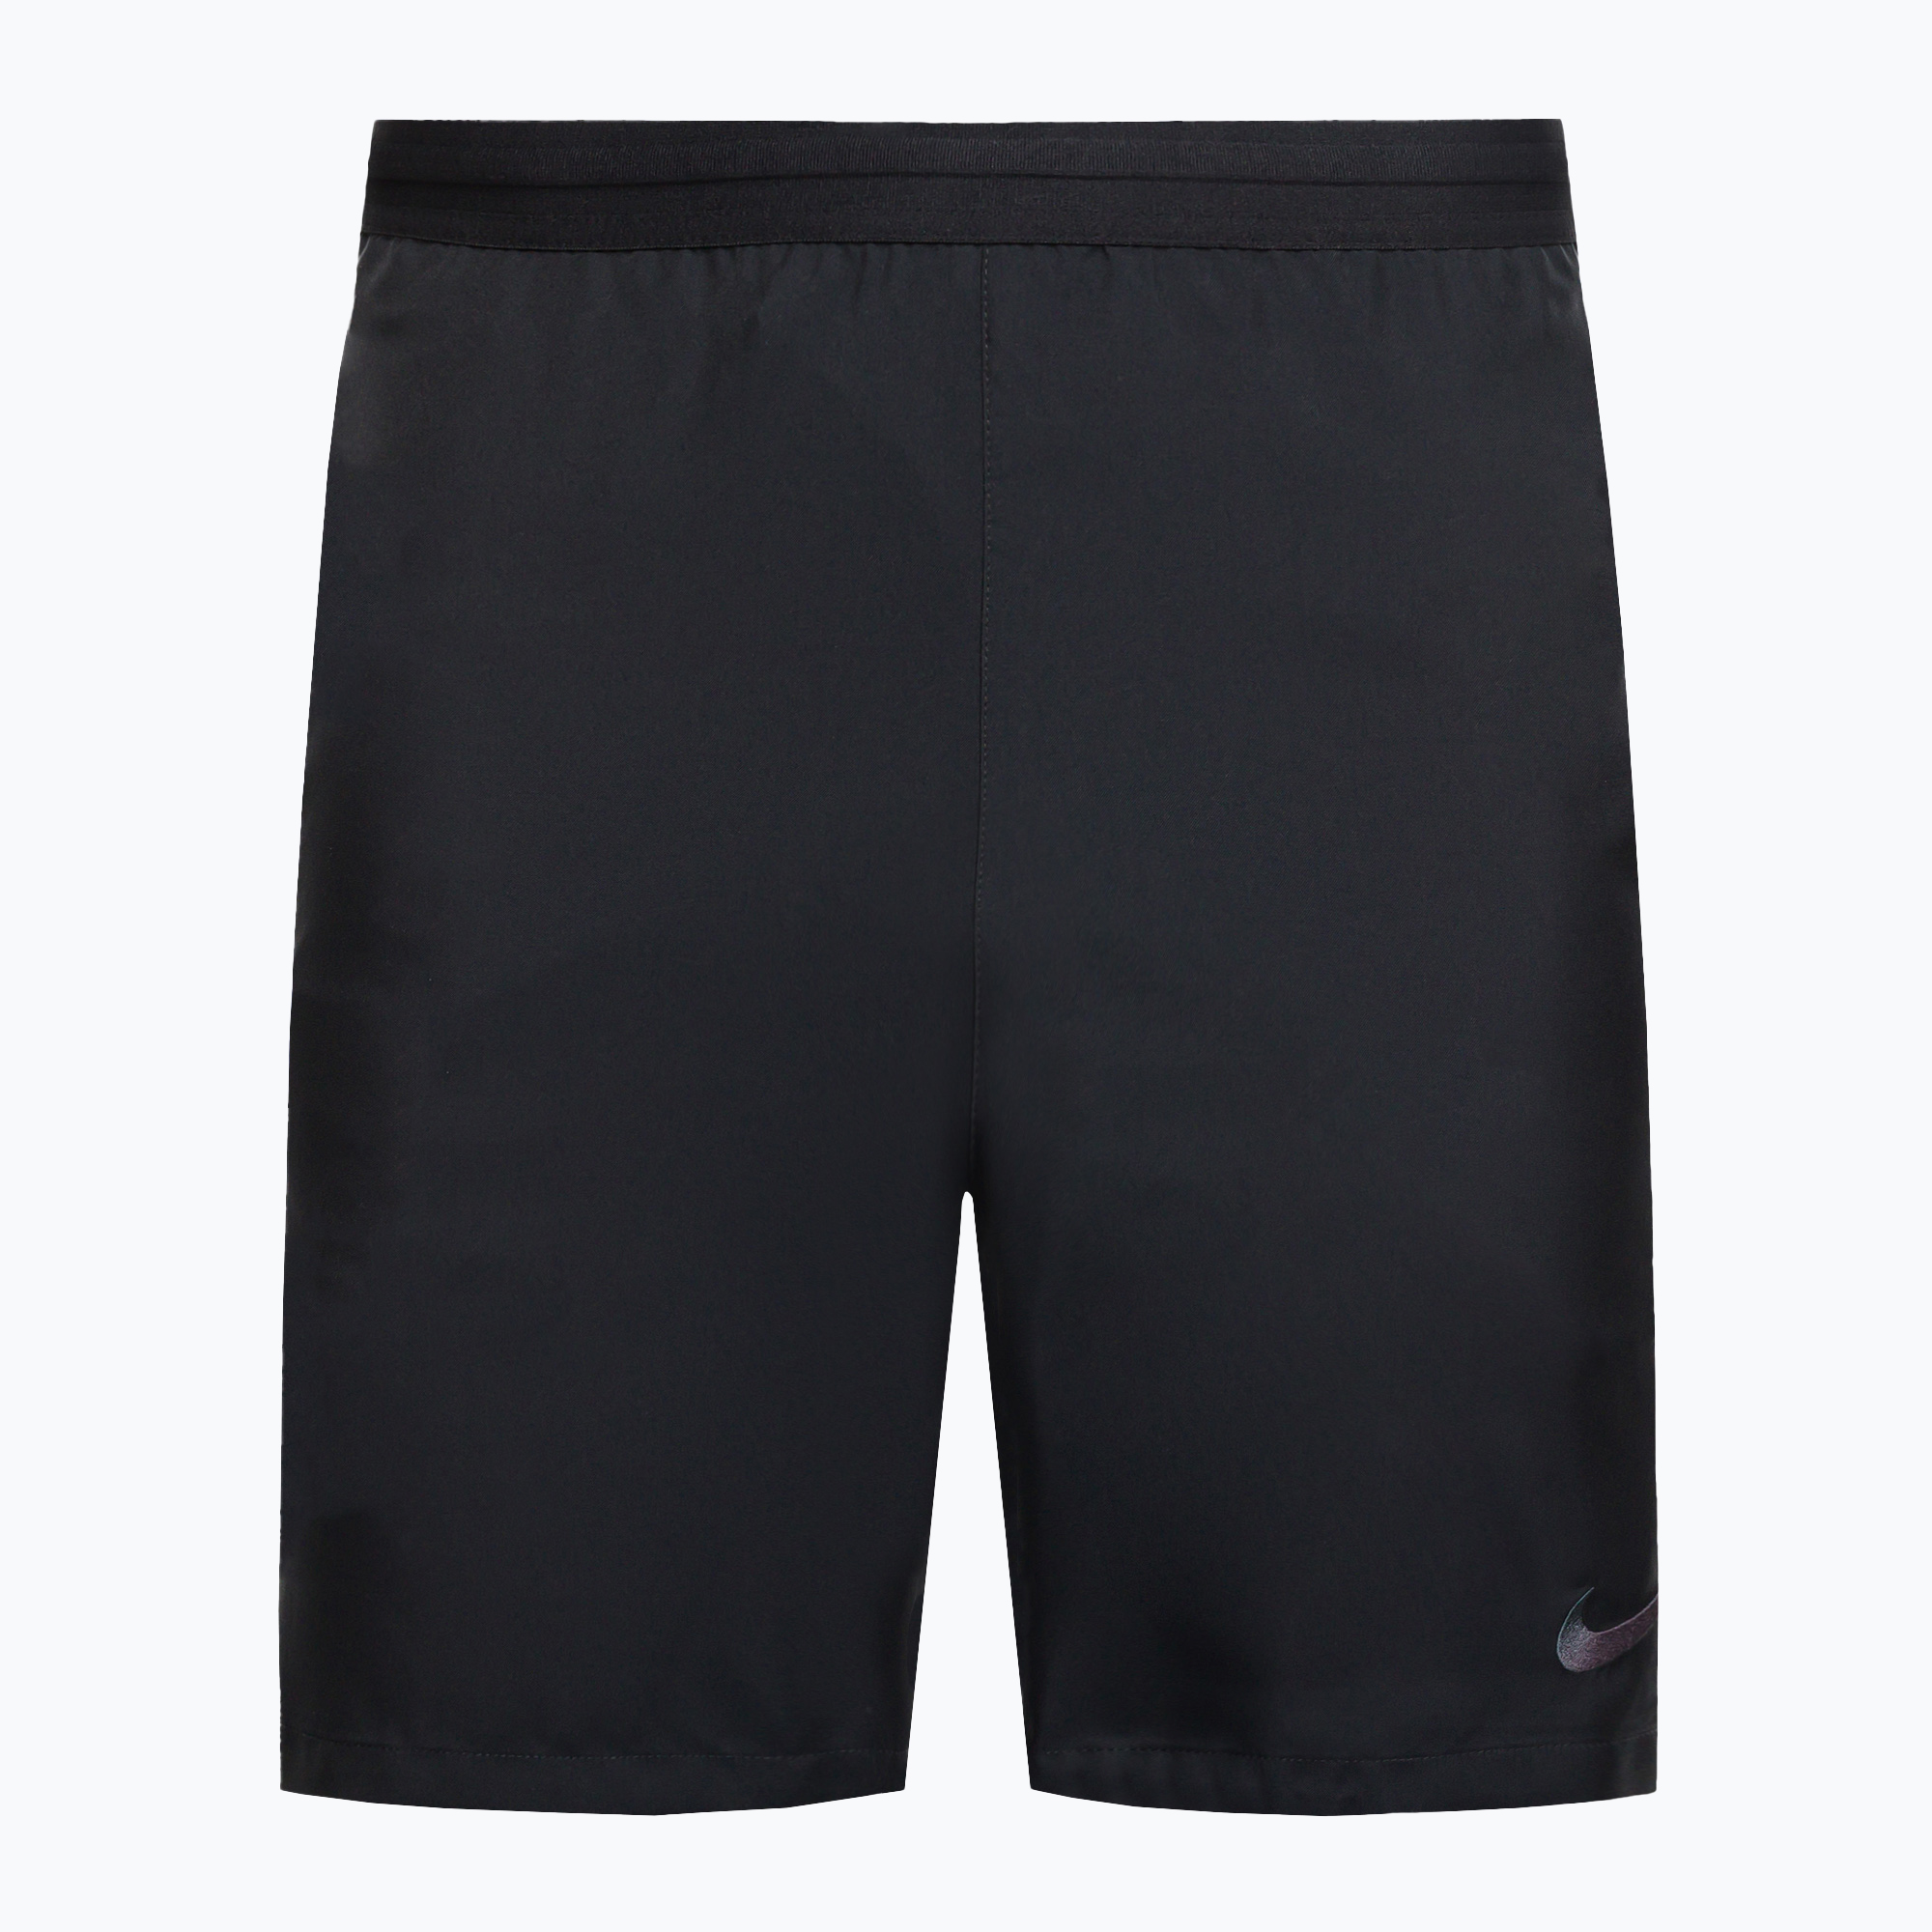 Pánske futbalové šortky Nike Dry-Fit Ref black AA0737-010